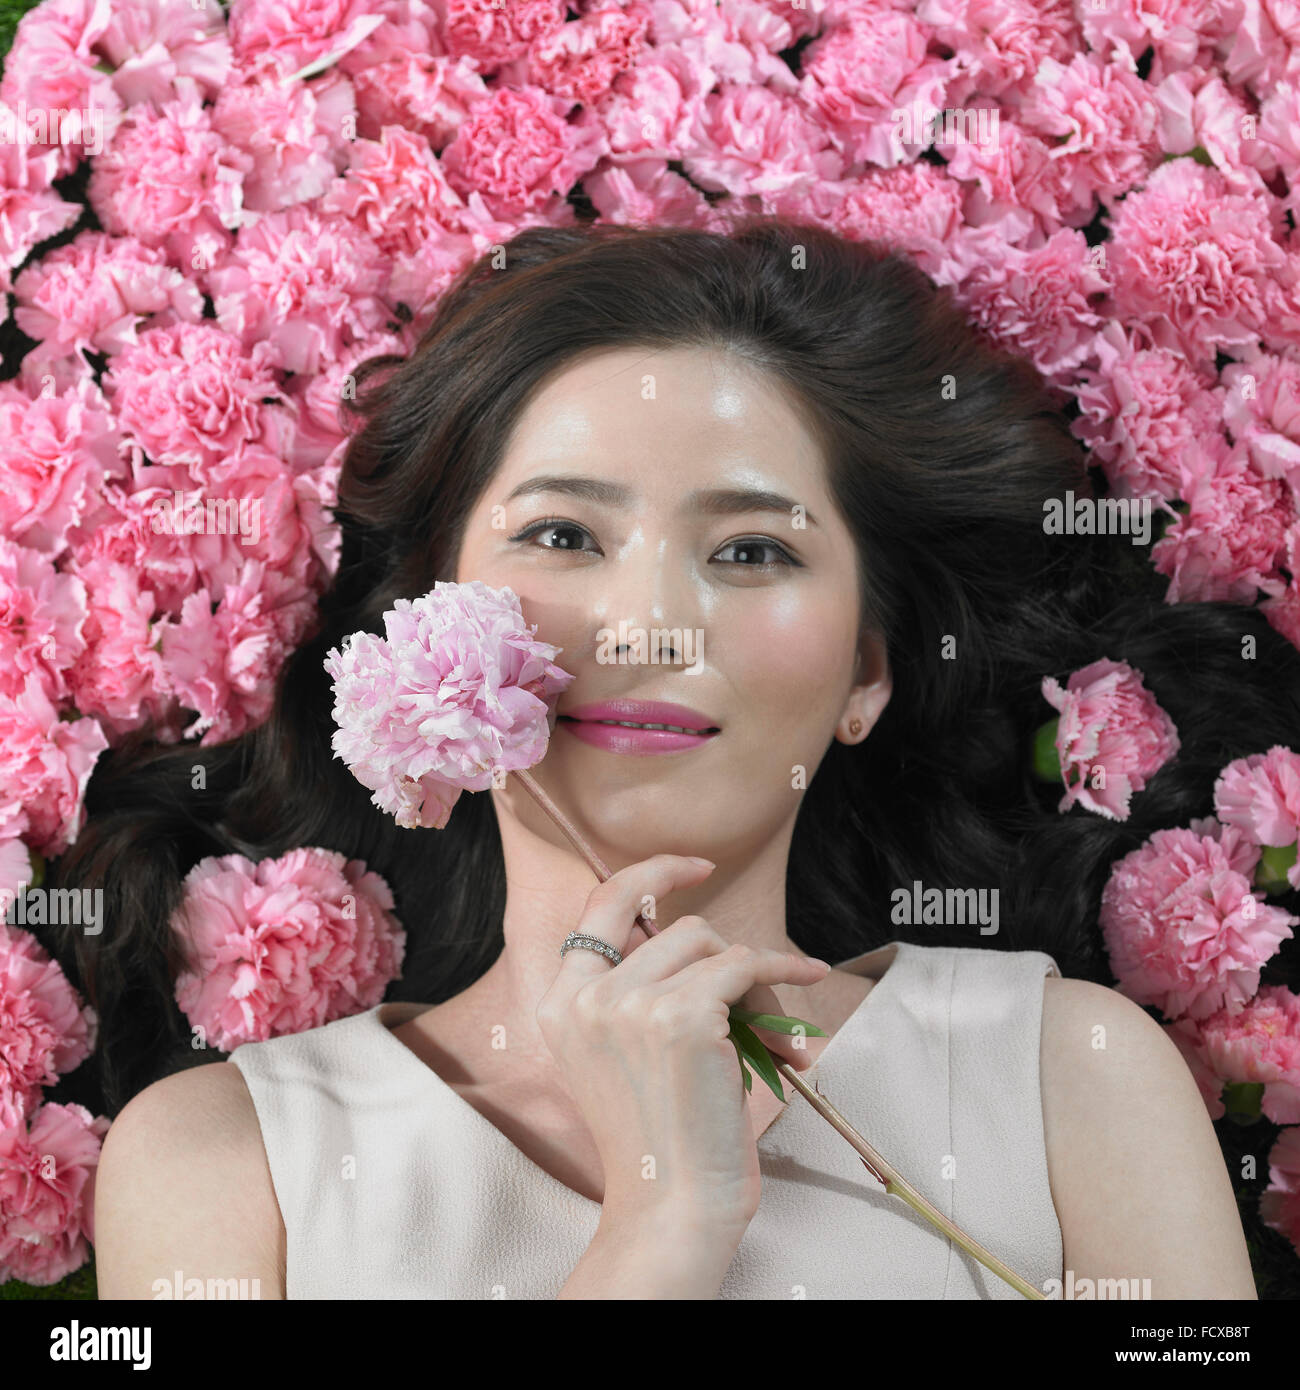 High angle of woman holding Flowers carnation une fleur sur son visage regardant en avant avec un sourire Banque D'Images